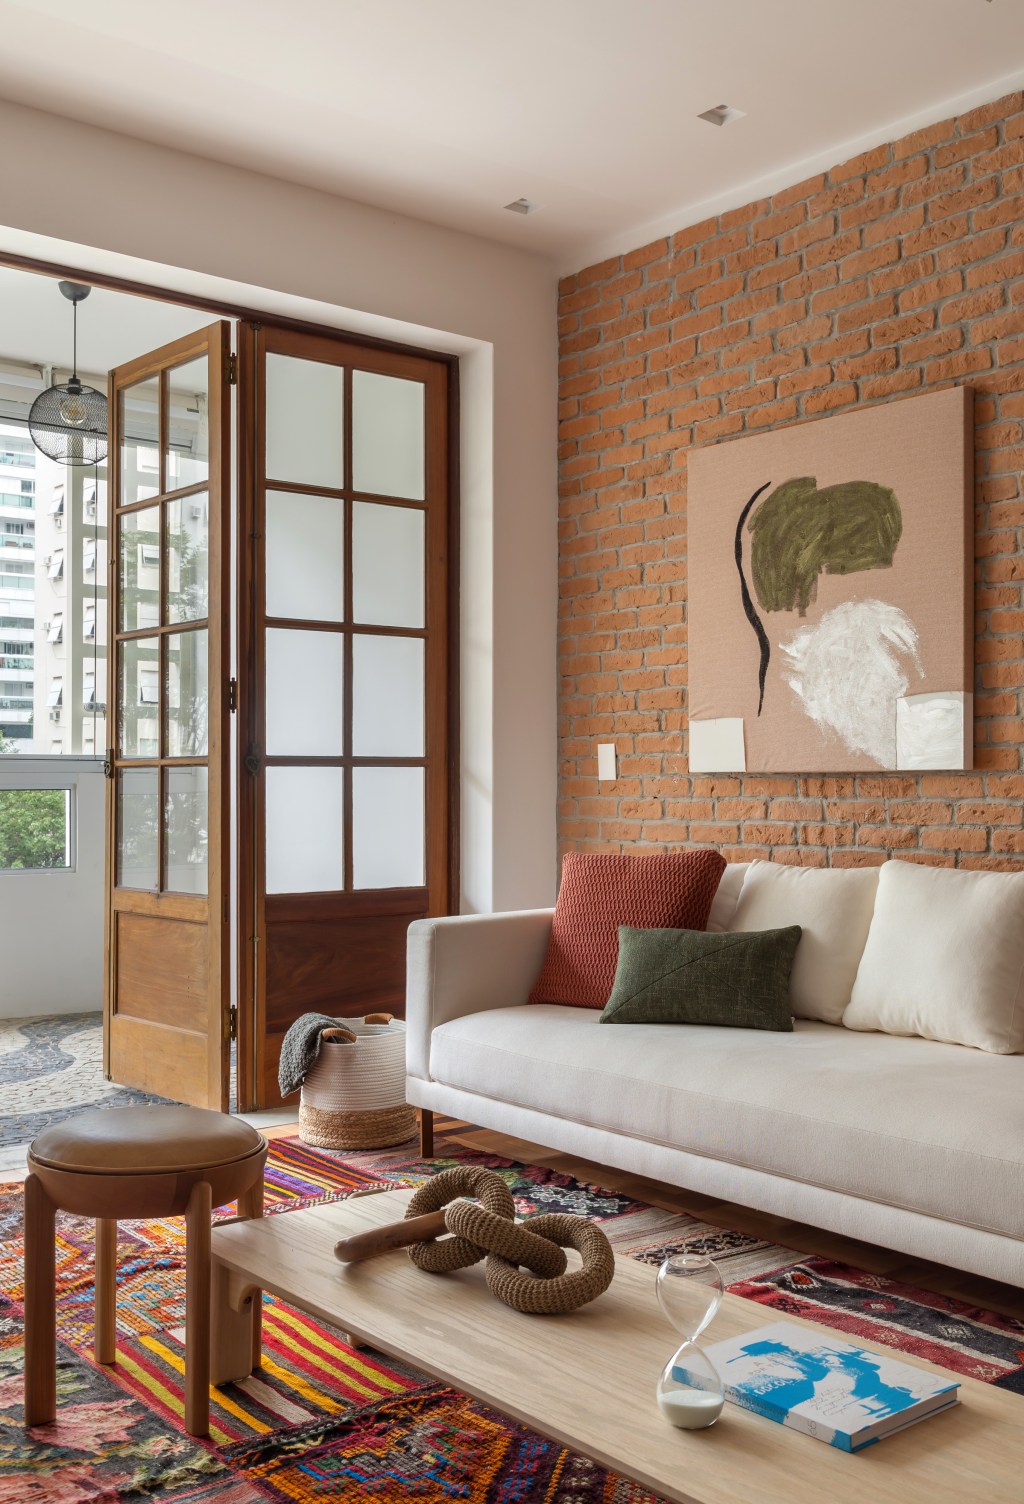 Apê de 145 m² ganha charme com tijolinhos, ladrilho hidráulico e patchwork. Na foto, sala com parede de tijolinhos, tapete de patchwork e aparador.